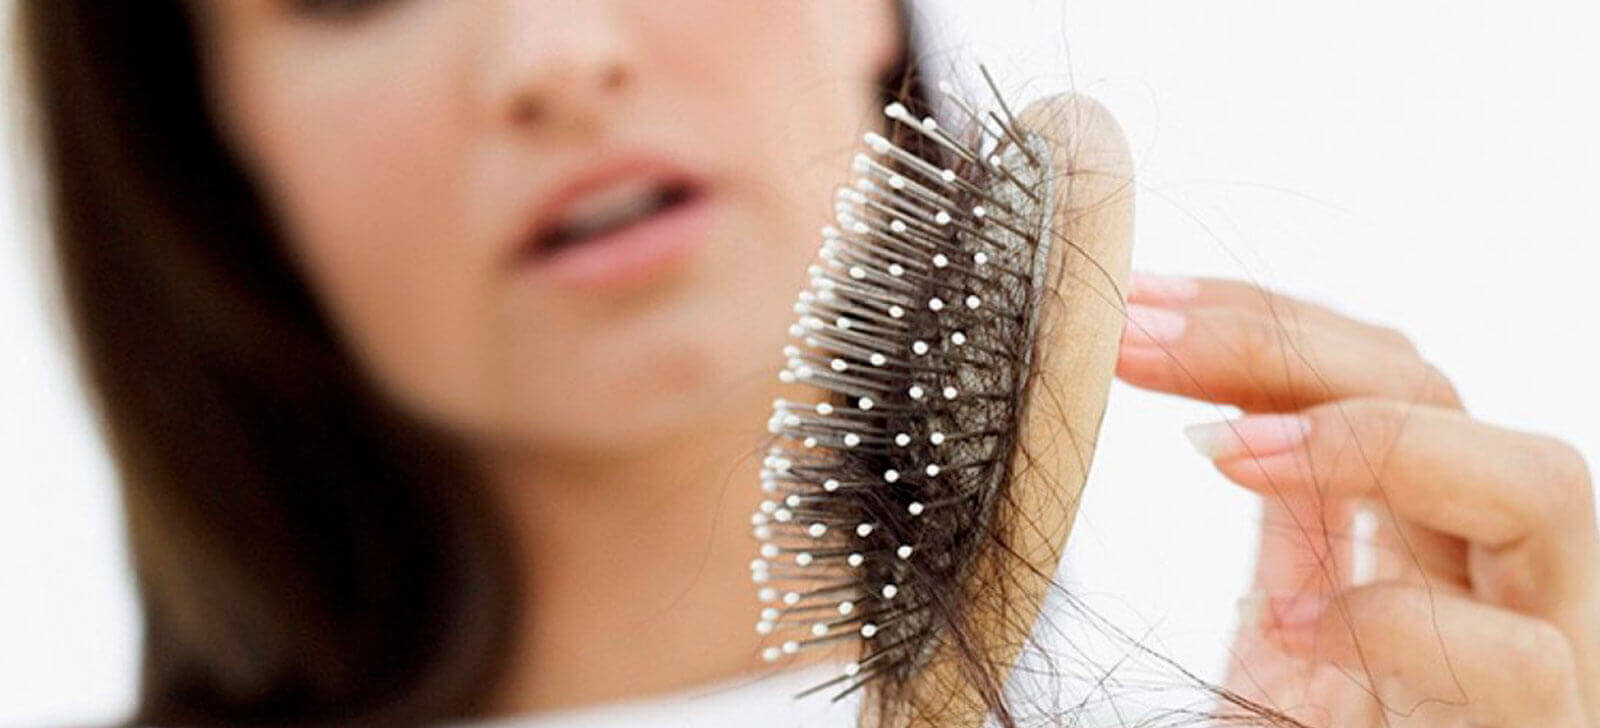 farmacia manipulacao campinas nova natural blog natureza magistral cabelo queda cabelo principais causas estresse fisico emocional